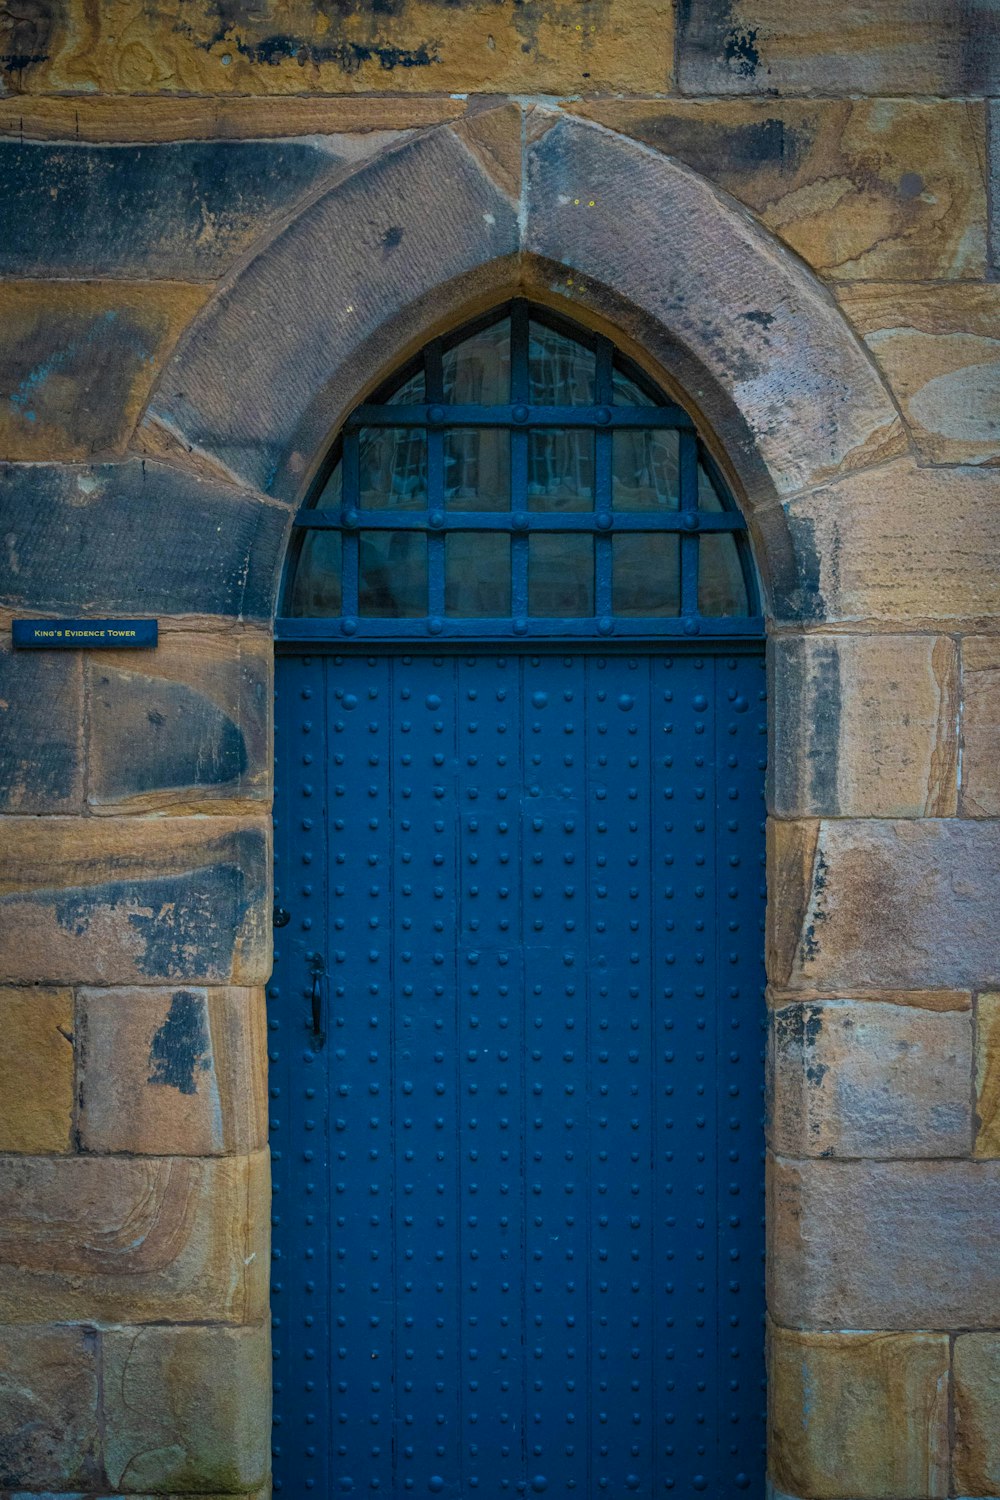 a blue door in a brick building